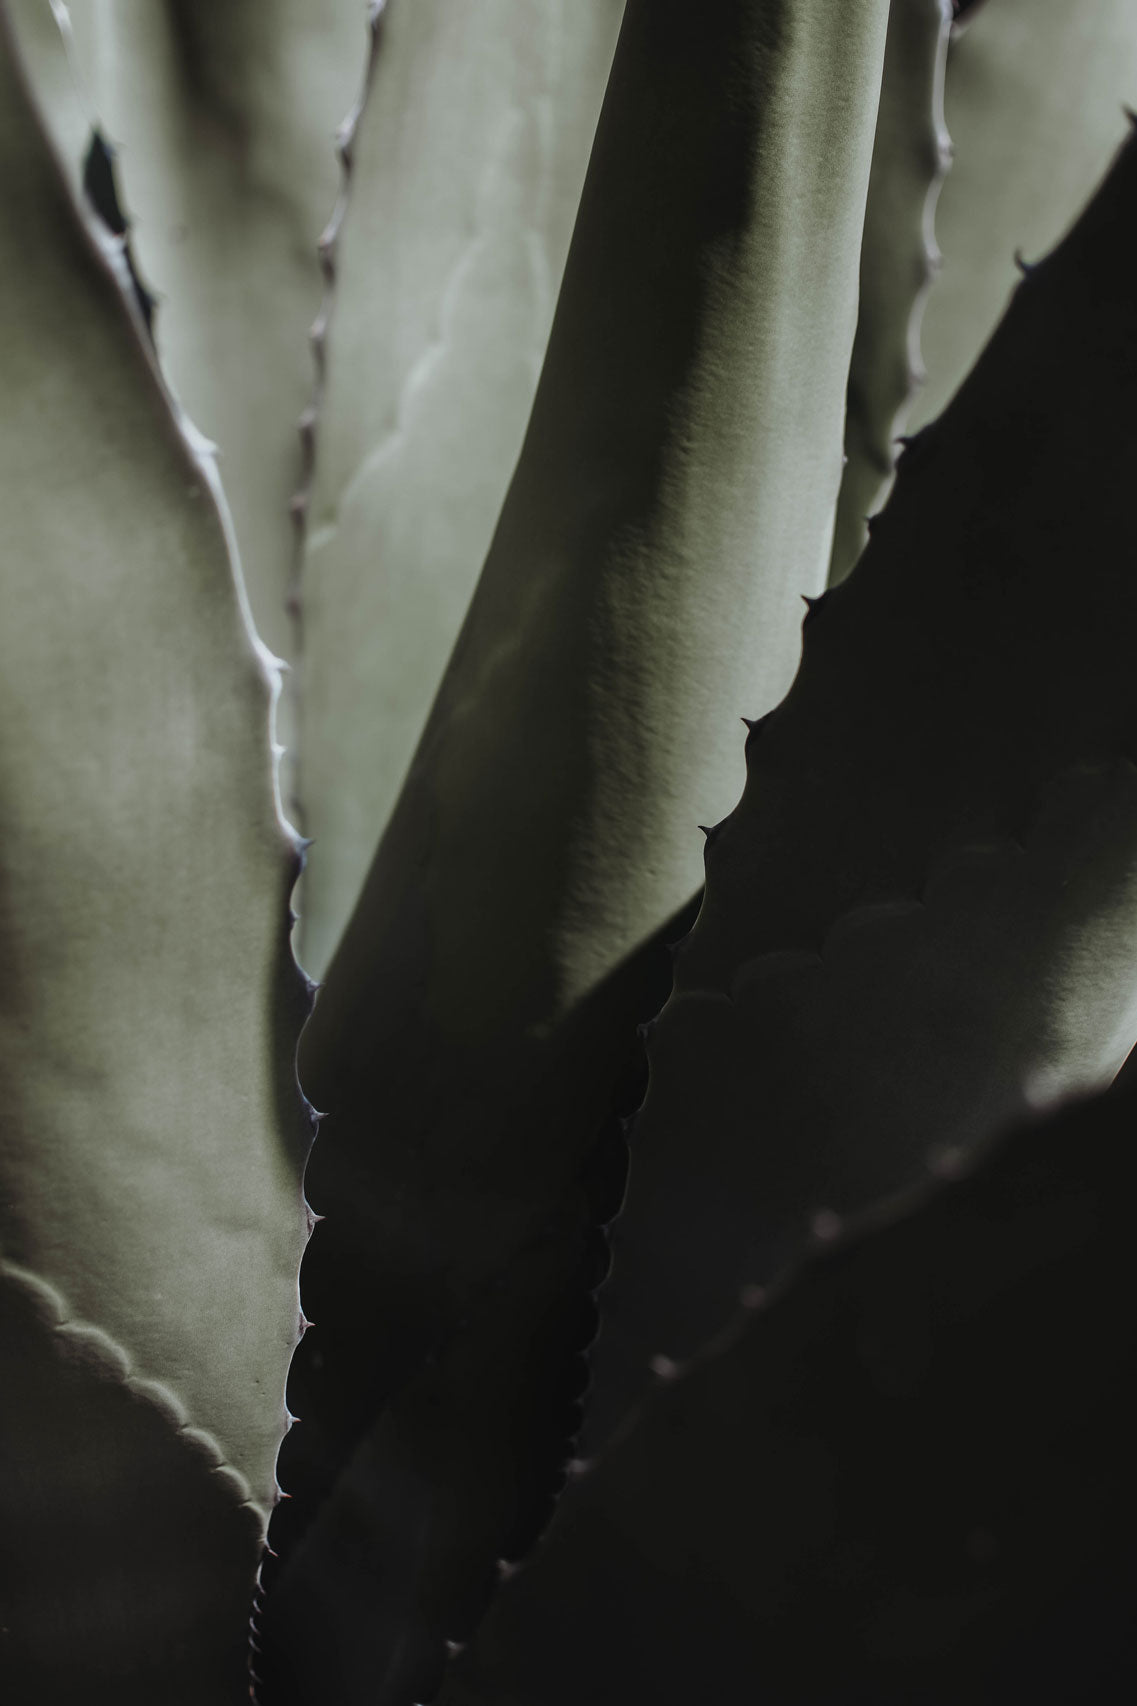 paracas-agave-texture.jpg